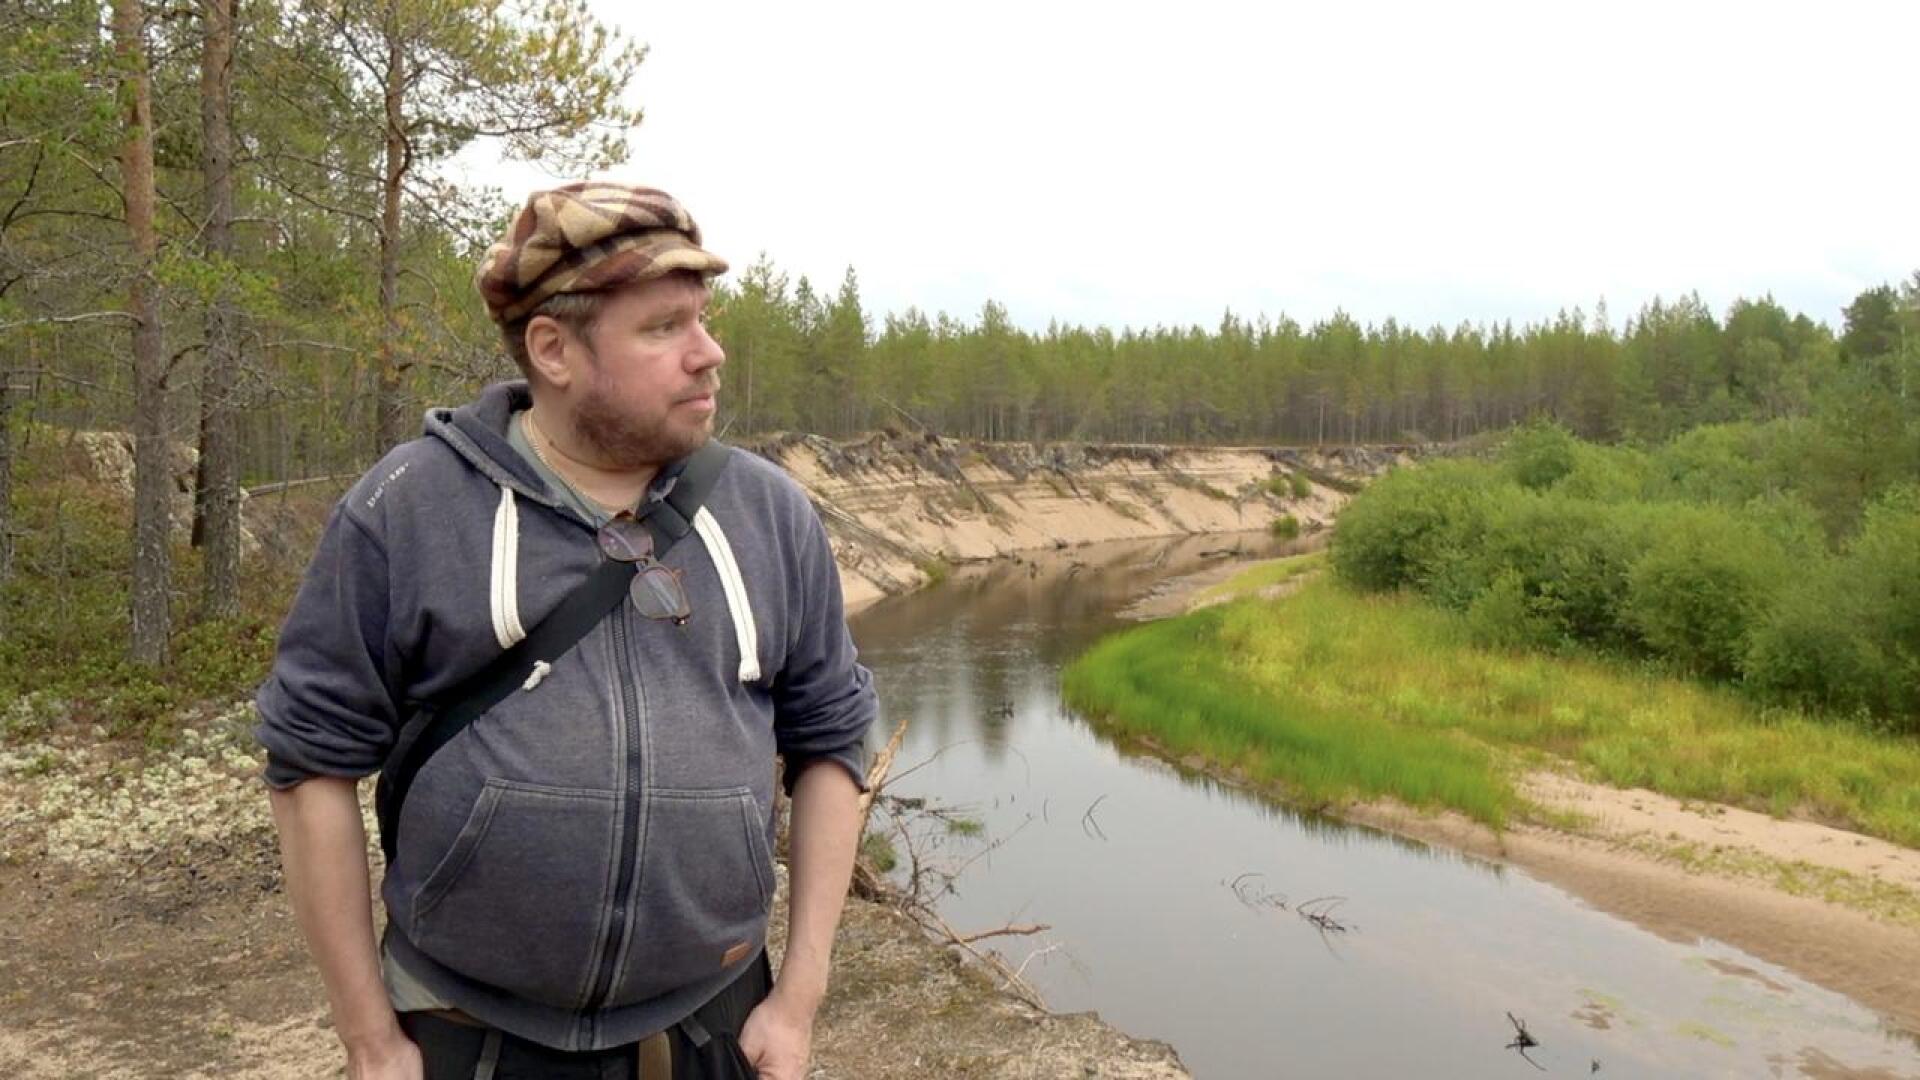 Kalajoen Rahjaan kansallispuiston perustamista on suositellut Suomen kansallispuistoista oppaita kirjoittanut Pepe Forsberg. Tässä on Siiponjoen maisemissa.